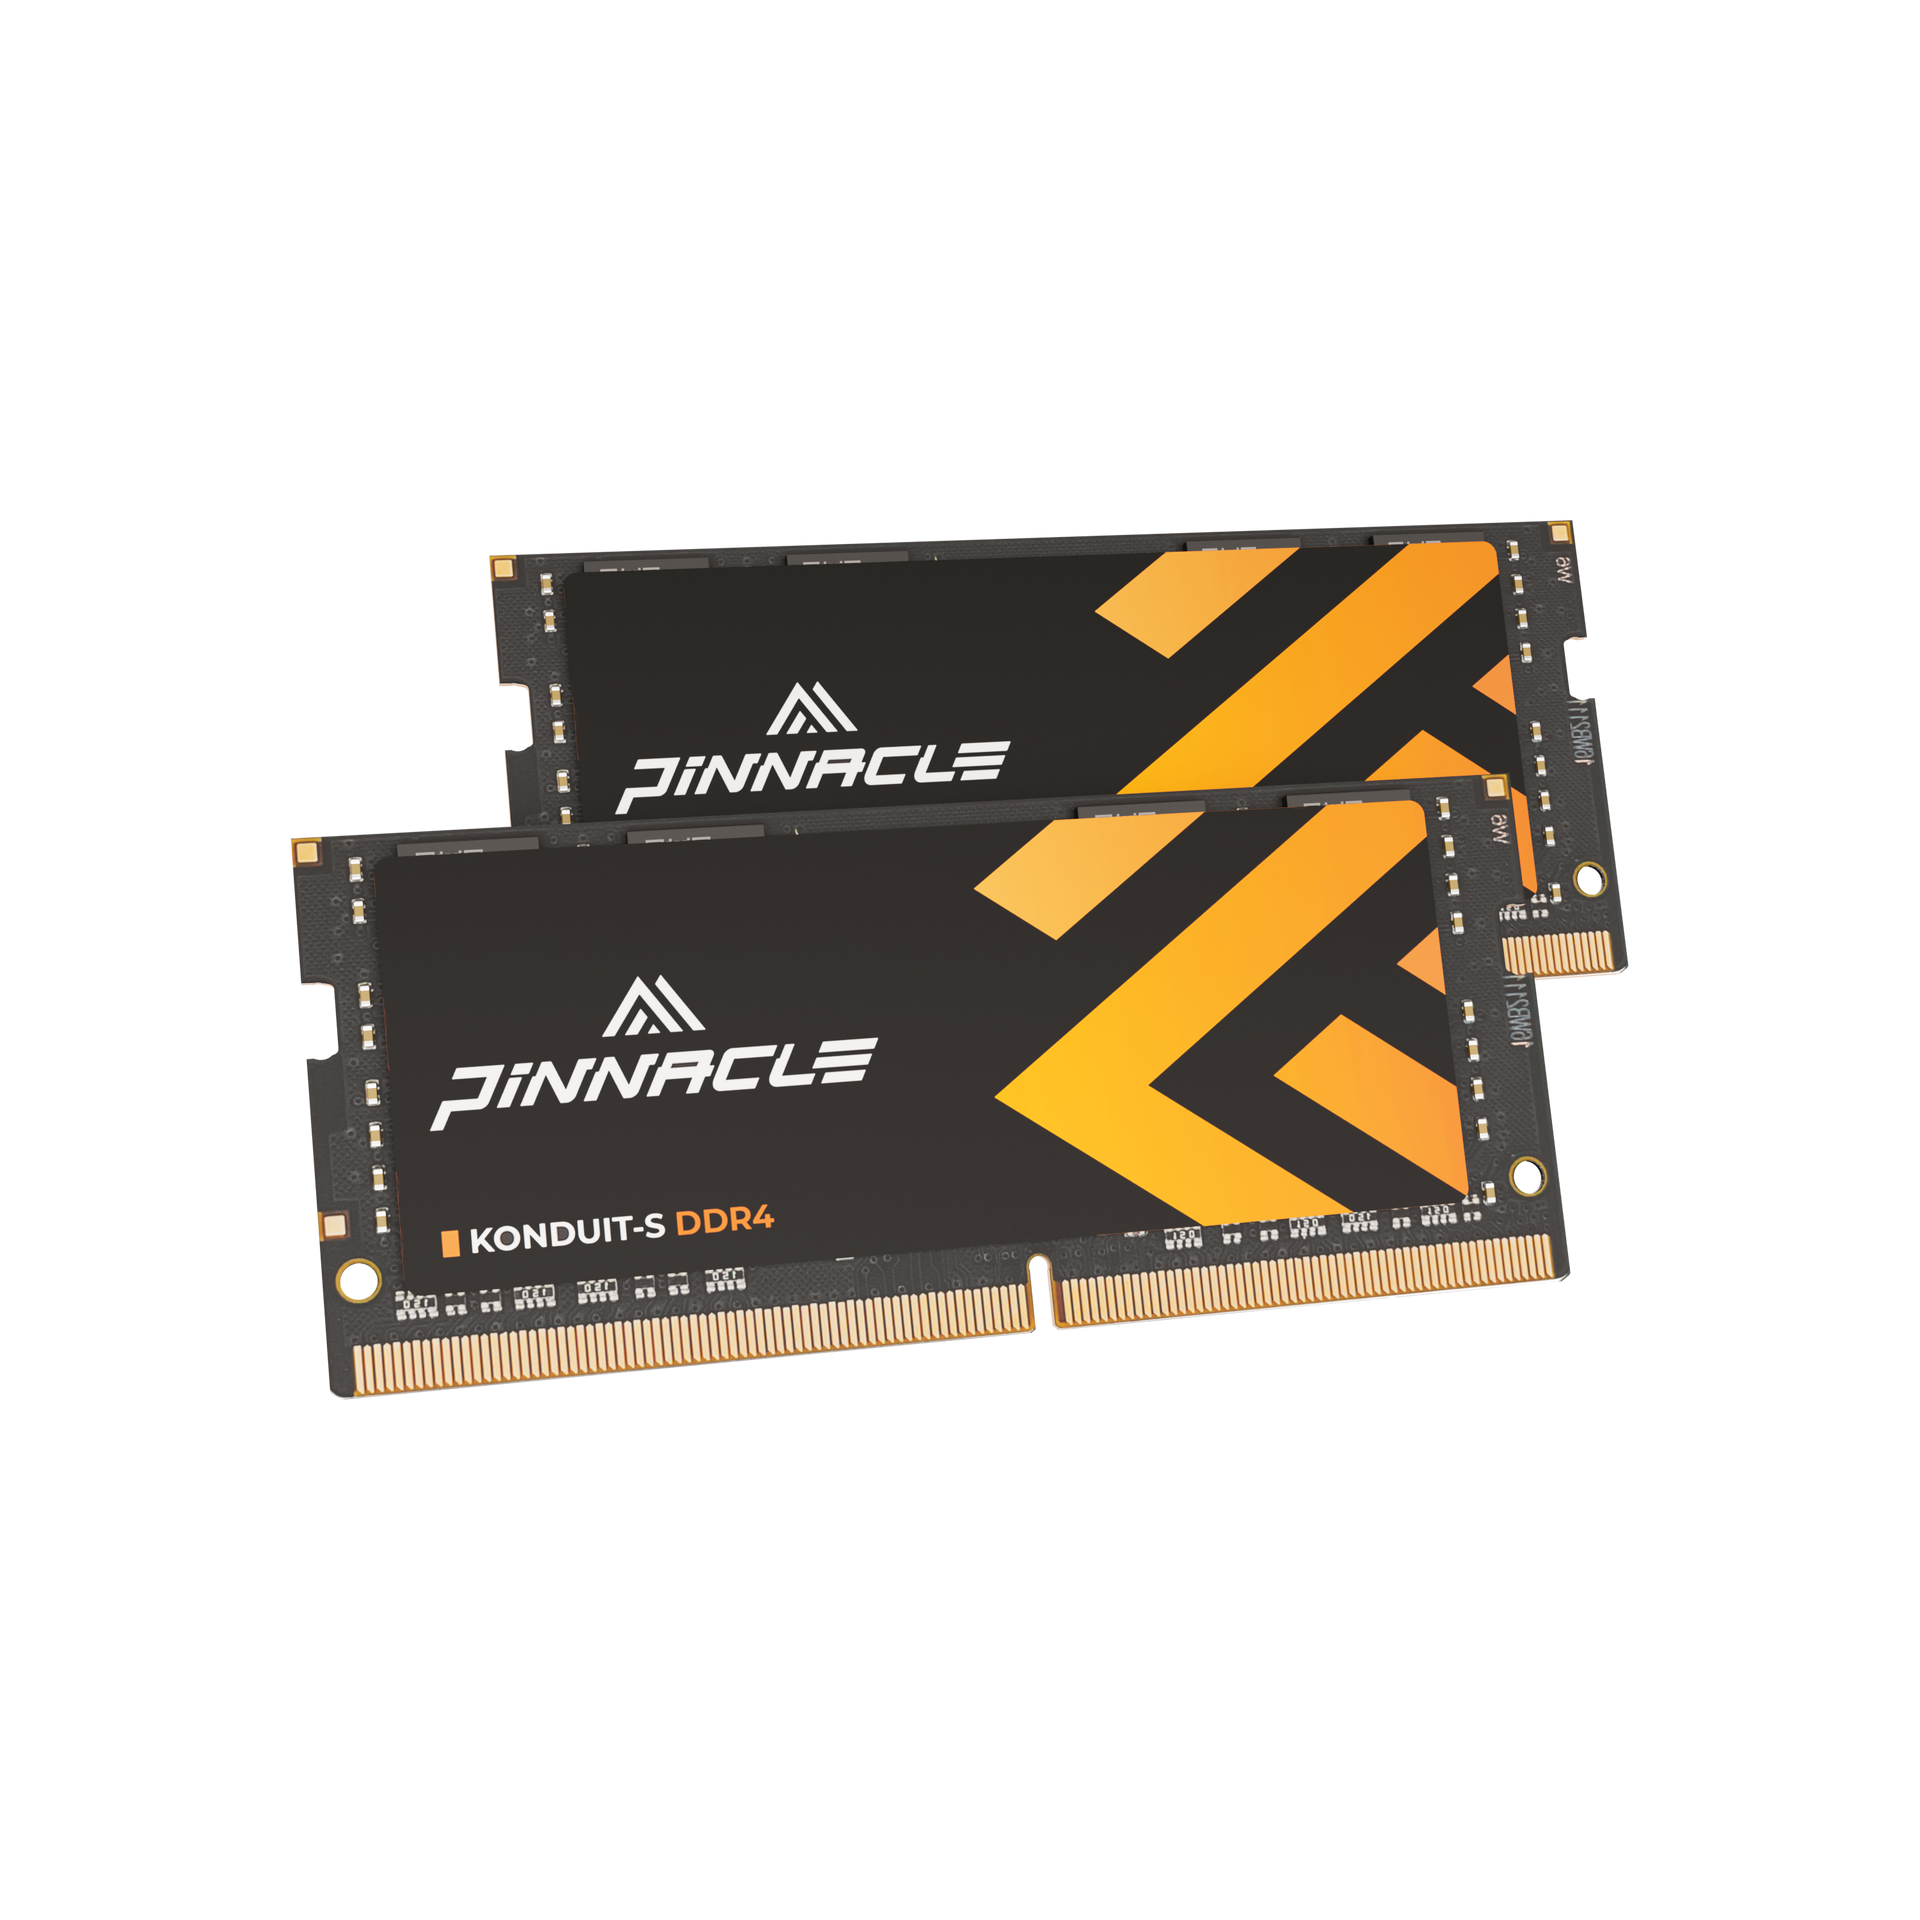 PINNACLE KONDUIT-S DDR4 SODIMM Laptop Memory